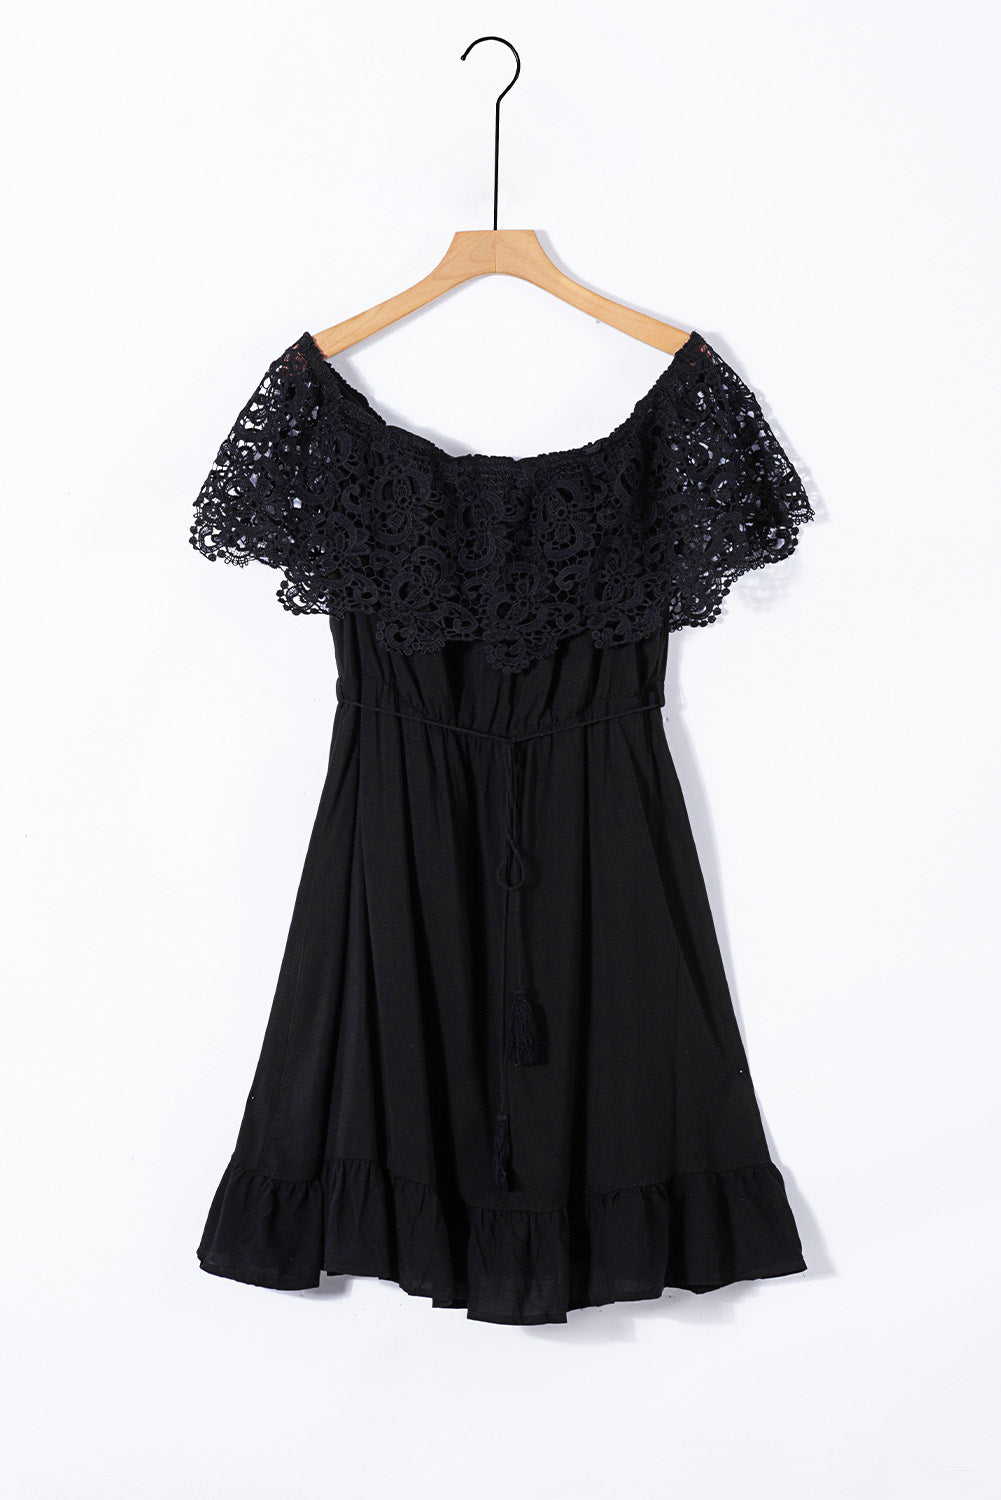 Schwarzes, schulterfreies Kleid in Übergröße mit Spitzenärmeln